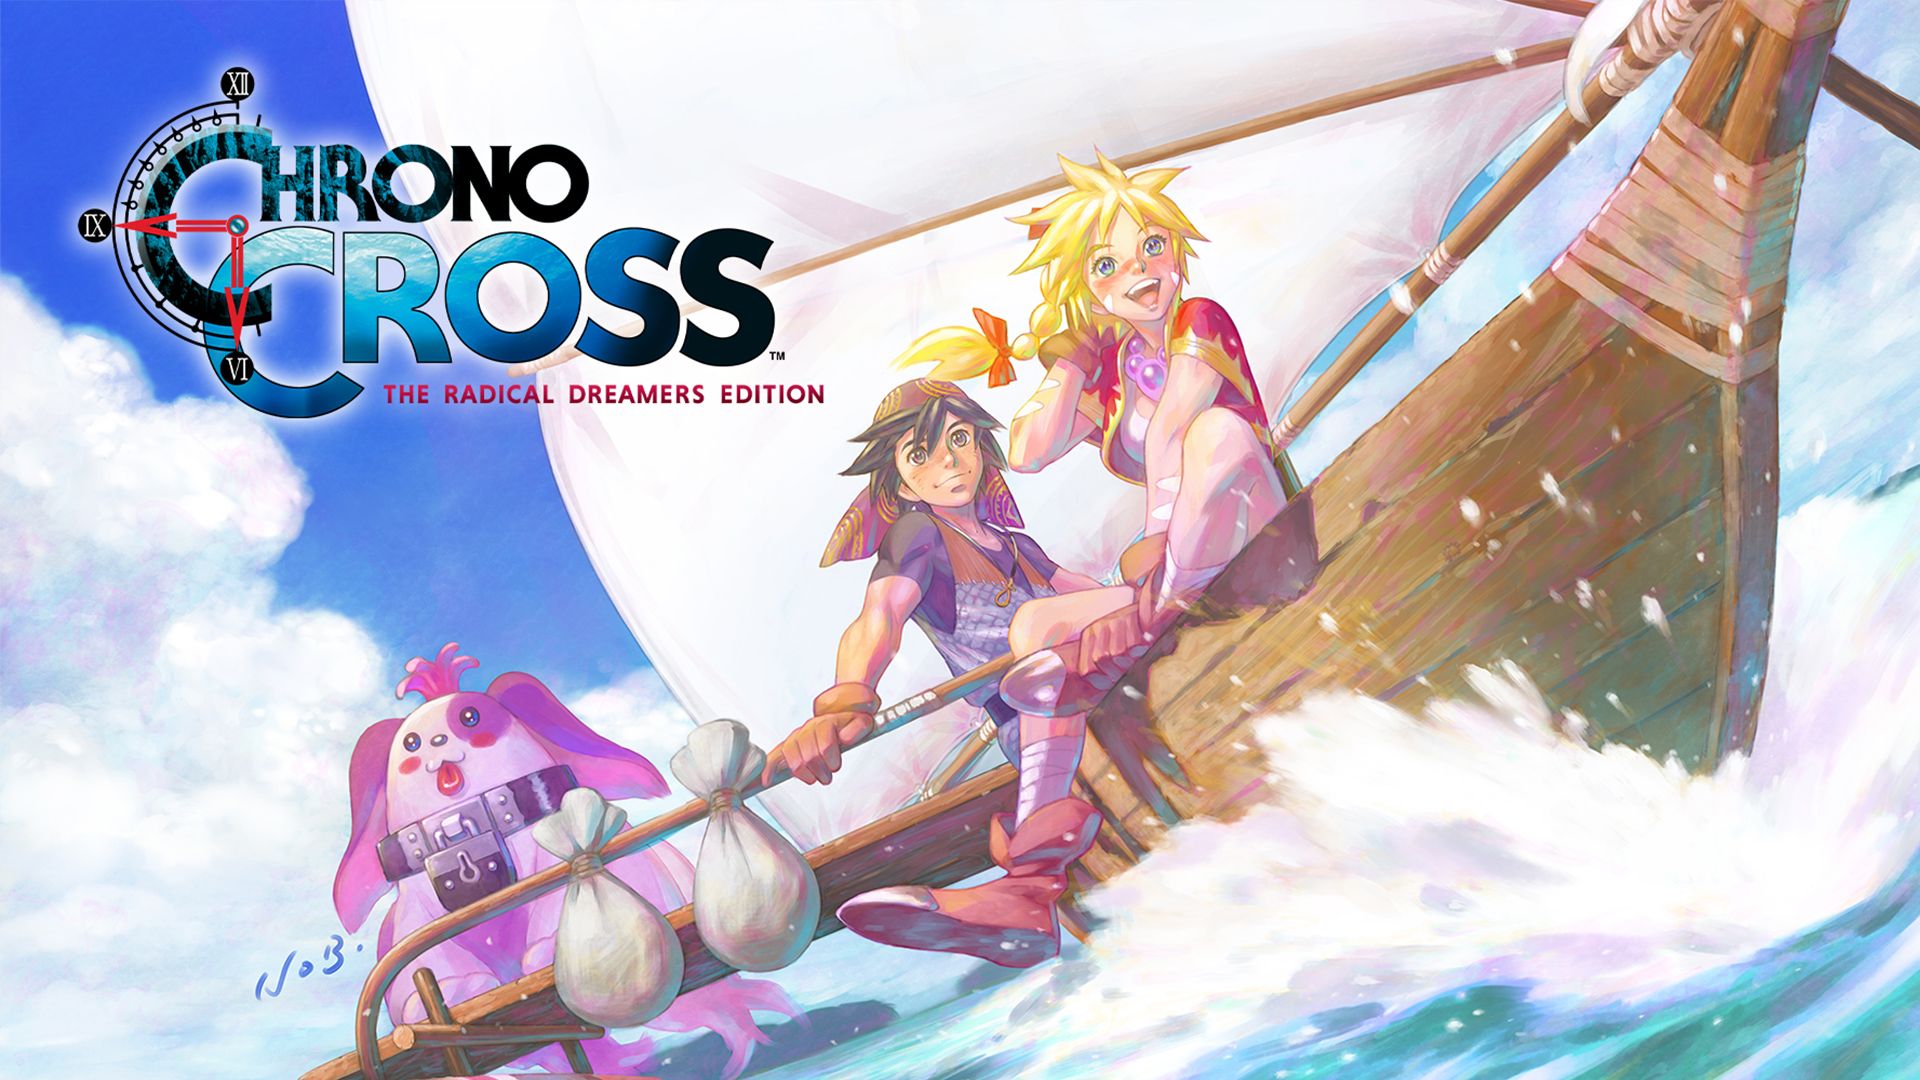 #Nach über 22 Jahren erscheint Chrono Cross heute erstmals in Europa